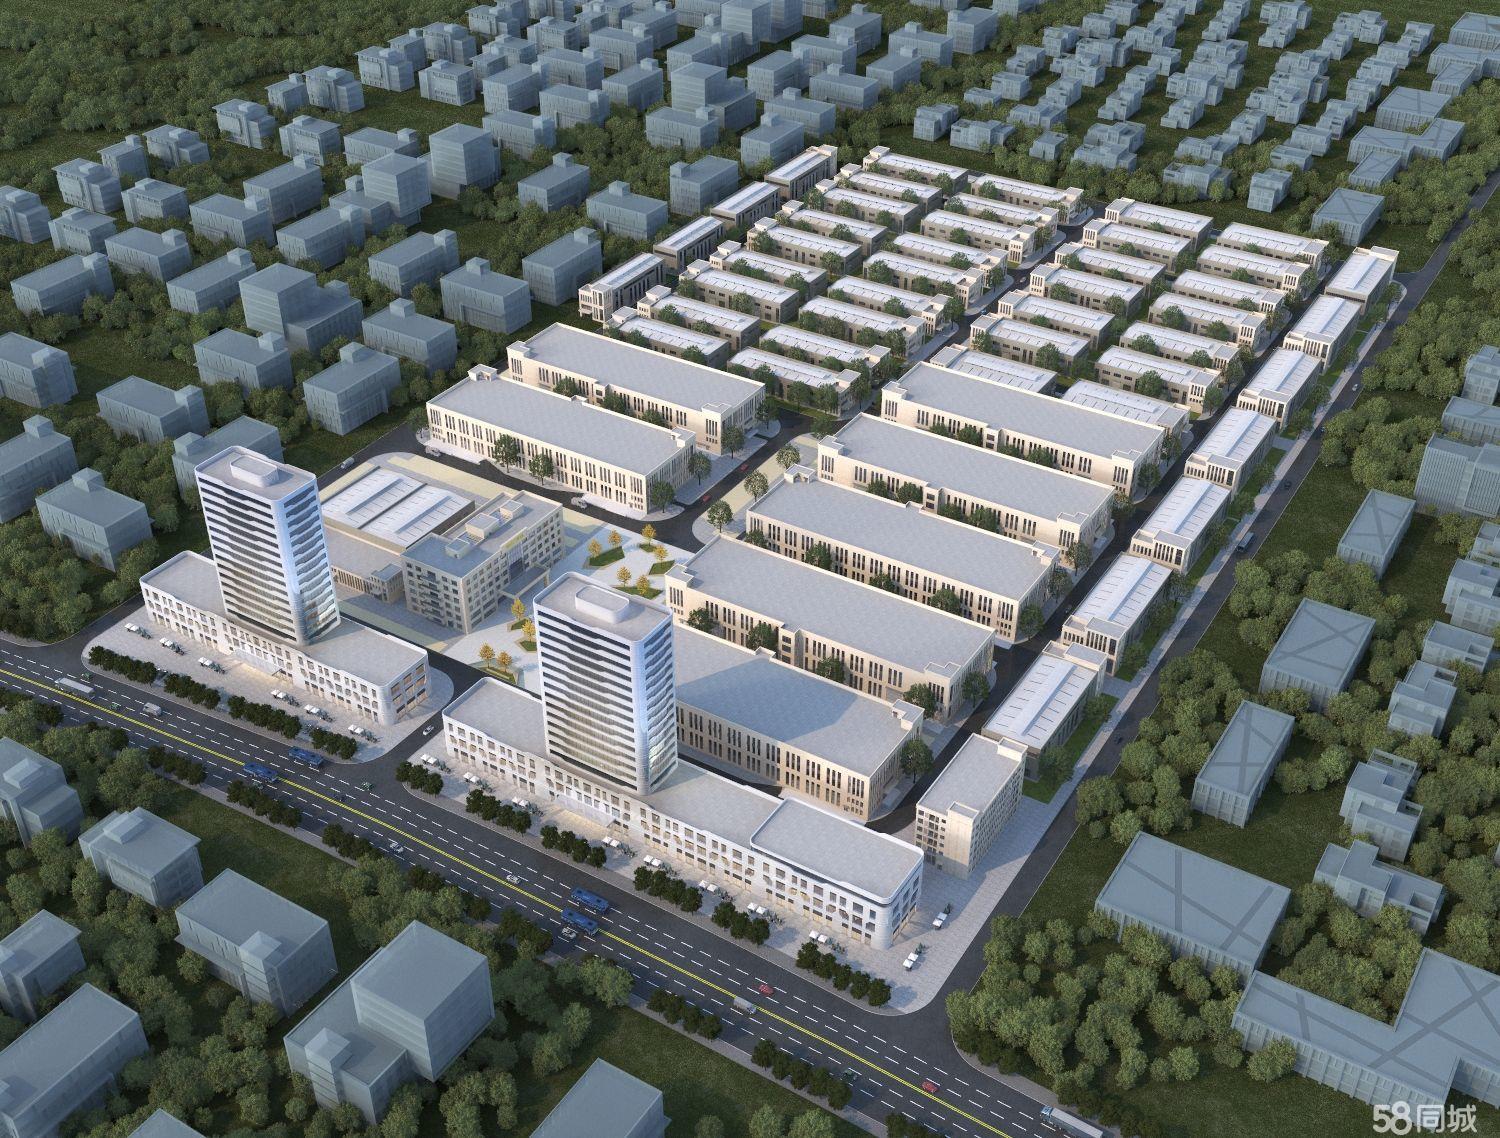  广安市前锋区产业园现有标准厂房9.5万平方米出租，并有多栋定制厂房出售，交通便利，有政府政策优惠